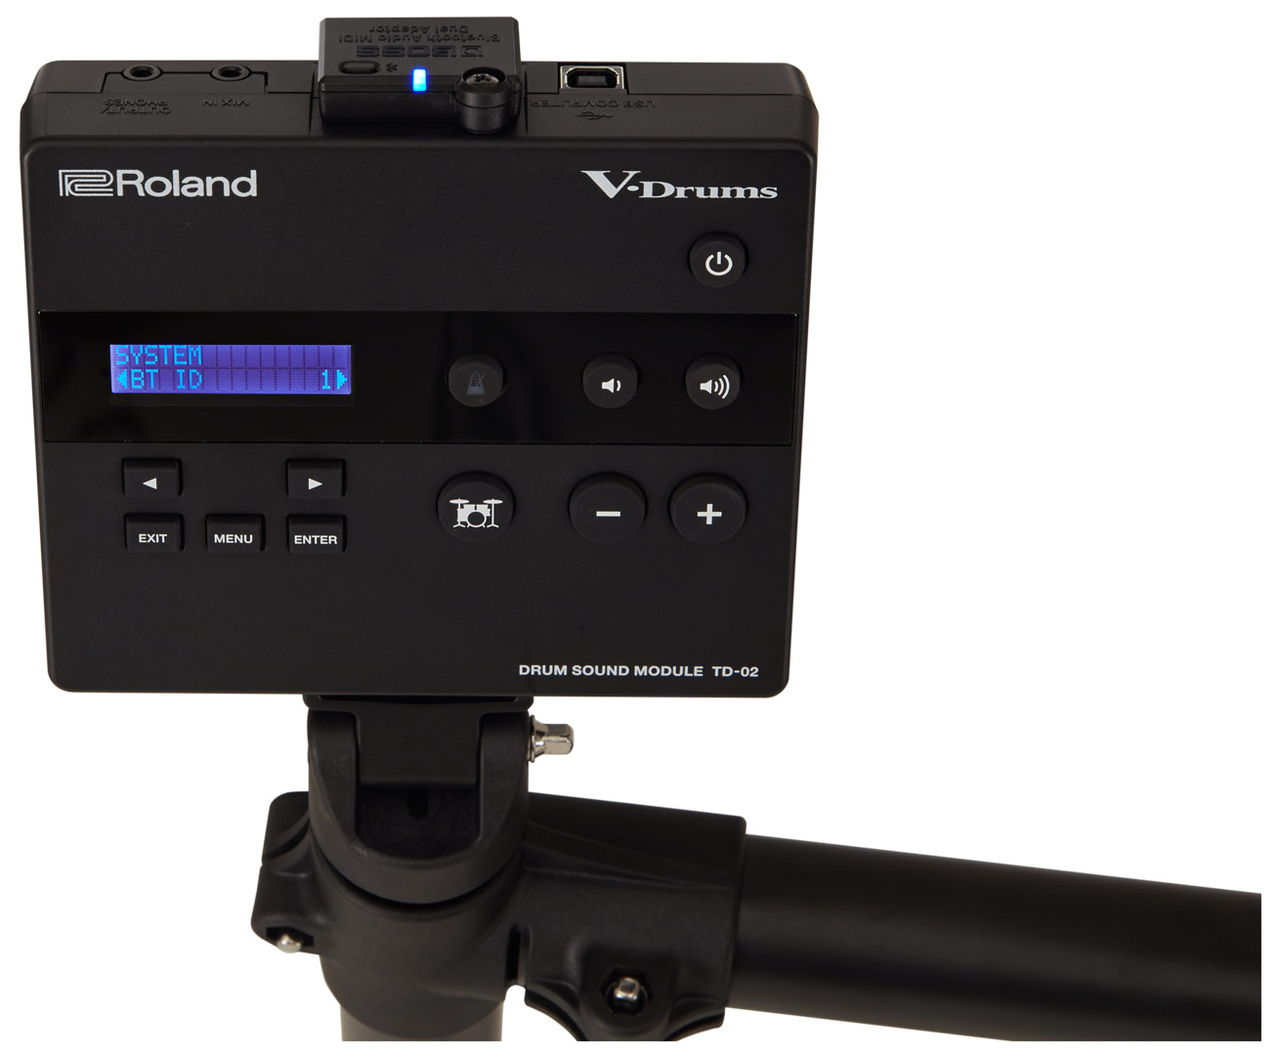  Roland электронная ударная установка Roland V-Drums TD-02K возвращенный товар вид другой A